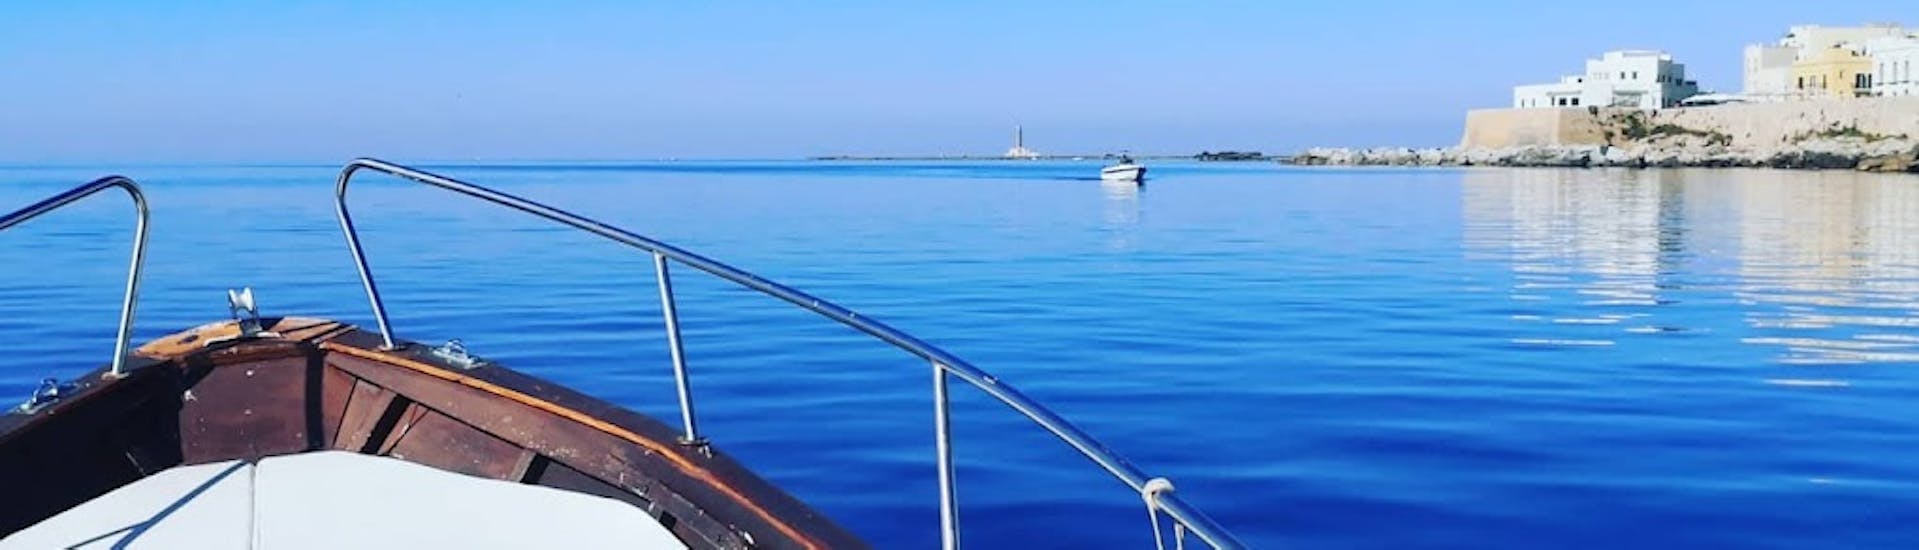 Giro in barca al tramonto da Gallipoli all'isola di Sant'Andrea.